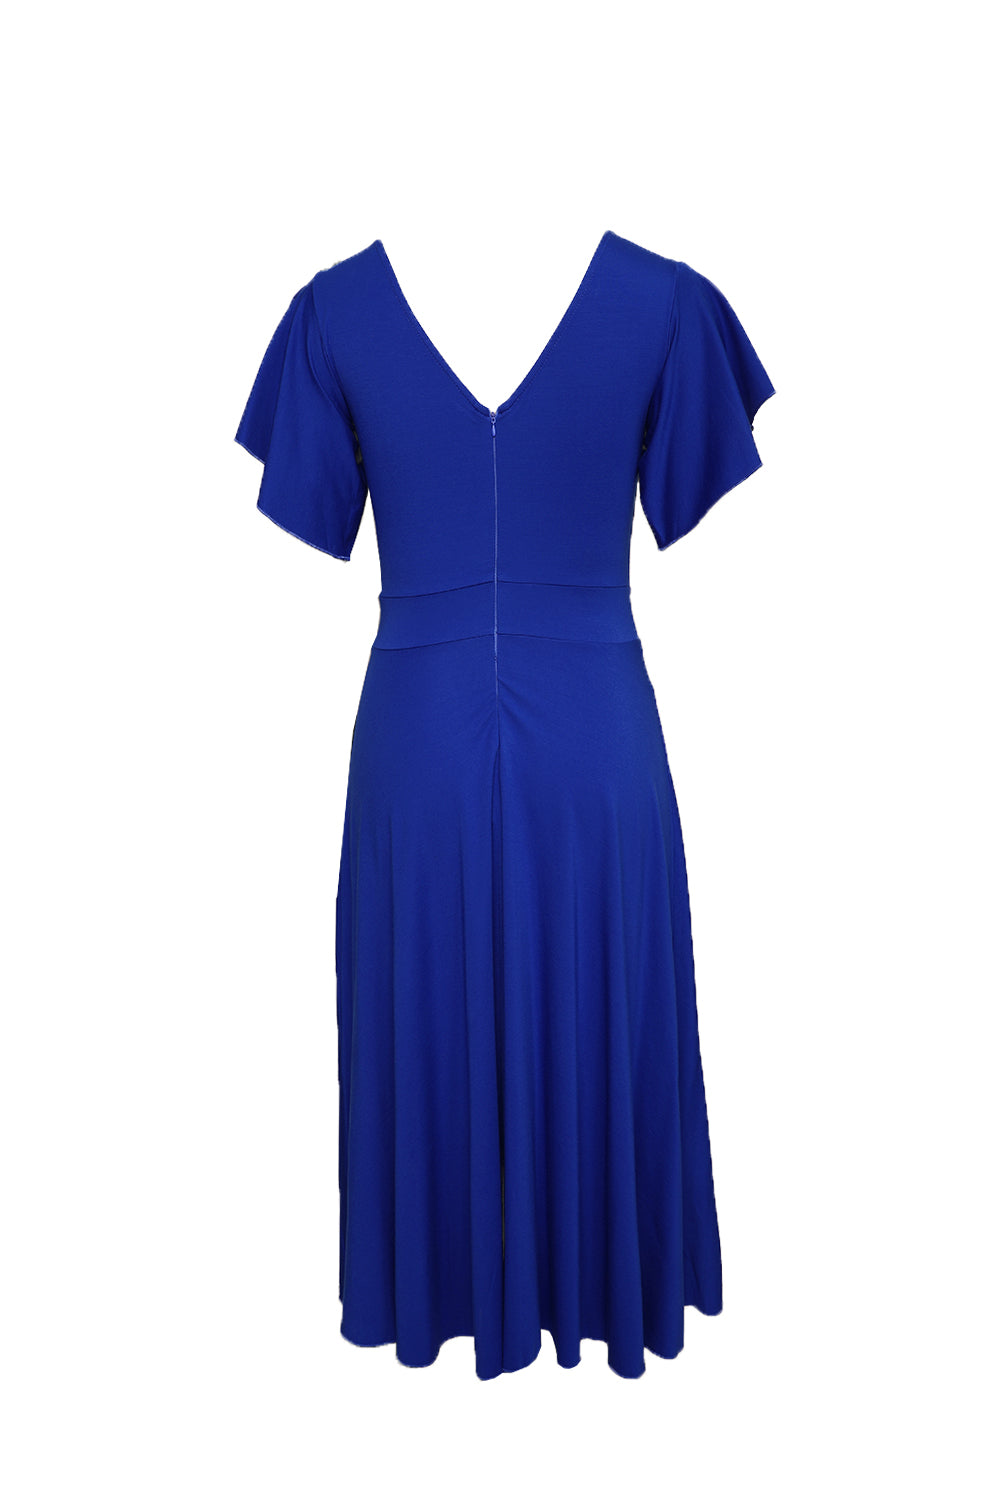 Blue V Neck Ruffled Sleeves Flare Long Formal Dress